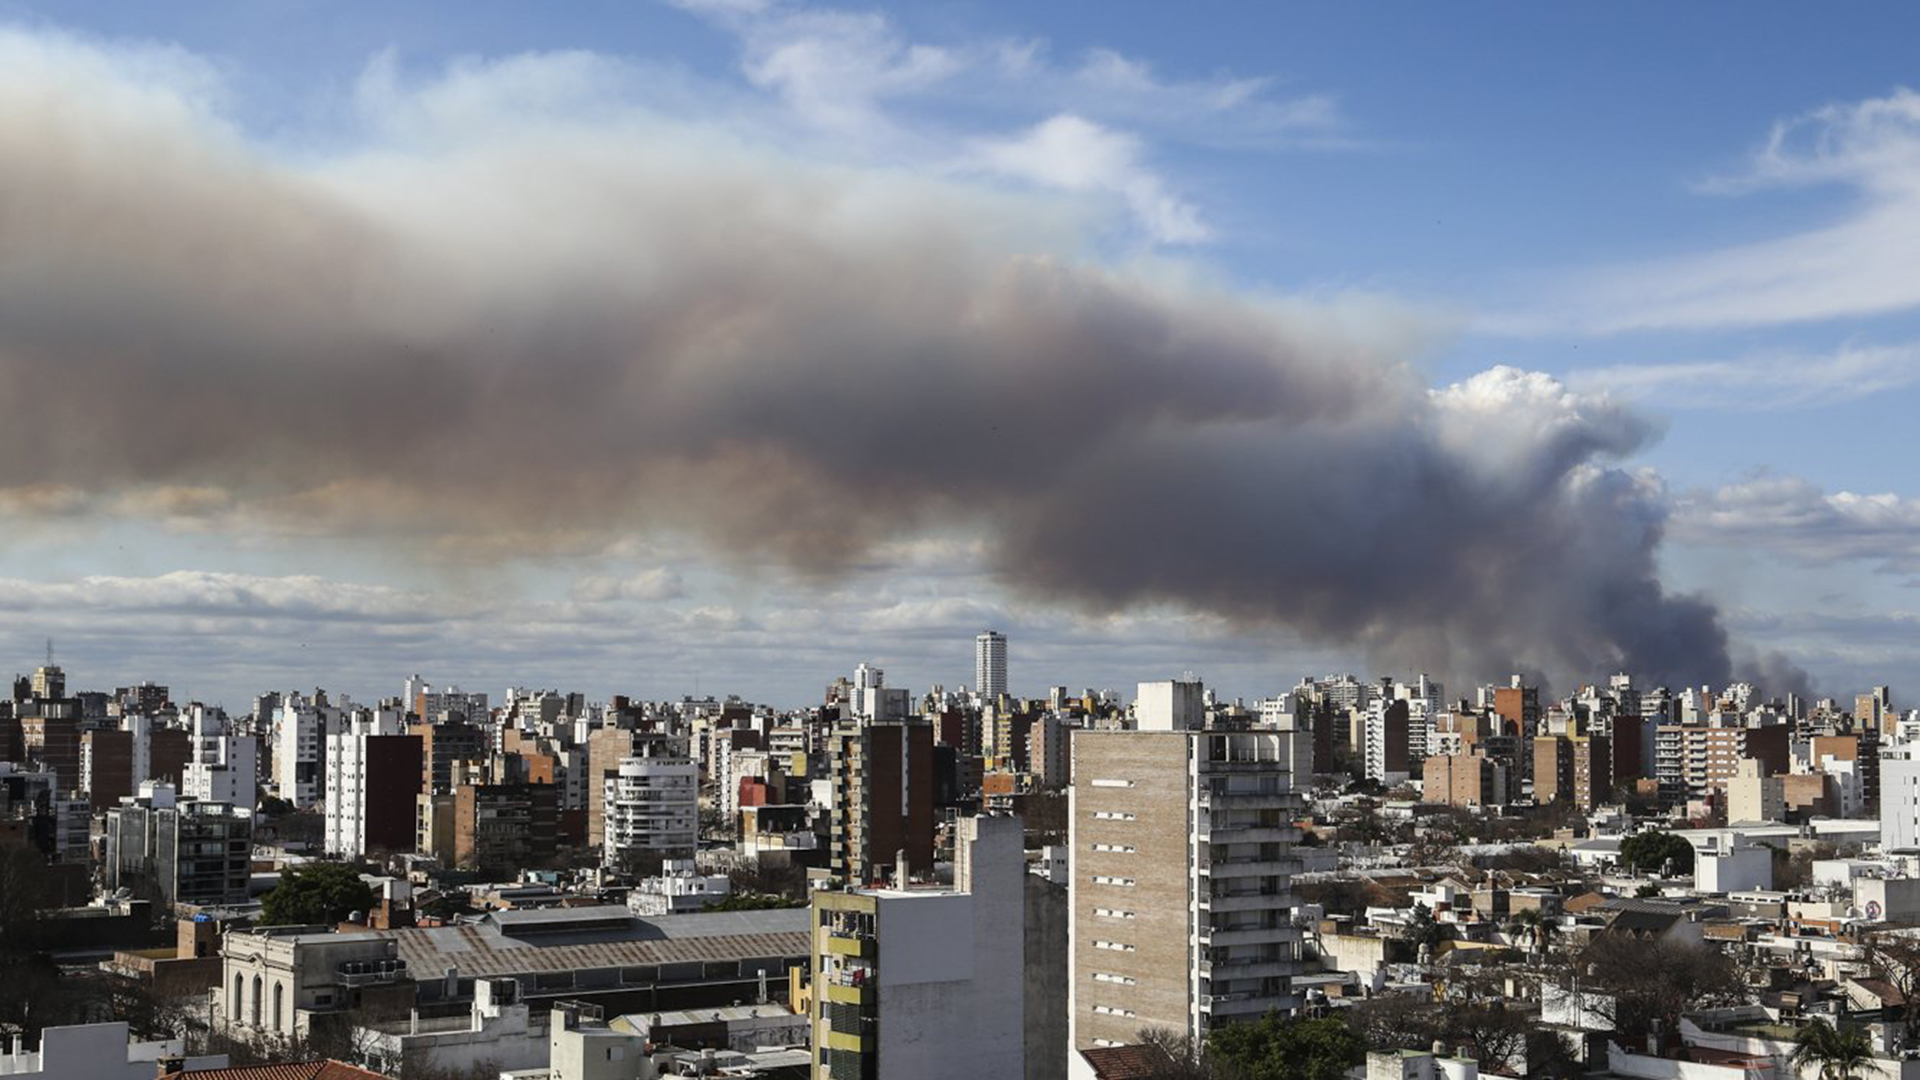 “Acá seguimos ahogados”: cómo es vivir bajo un cielo de humo tóxico, según los vecinos de Rosario